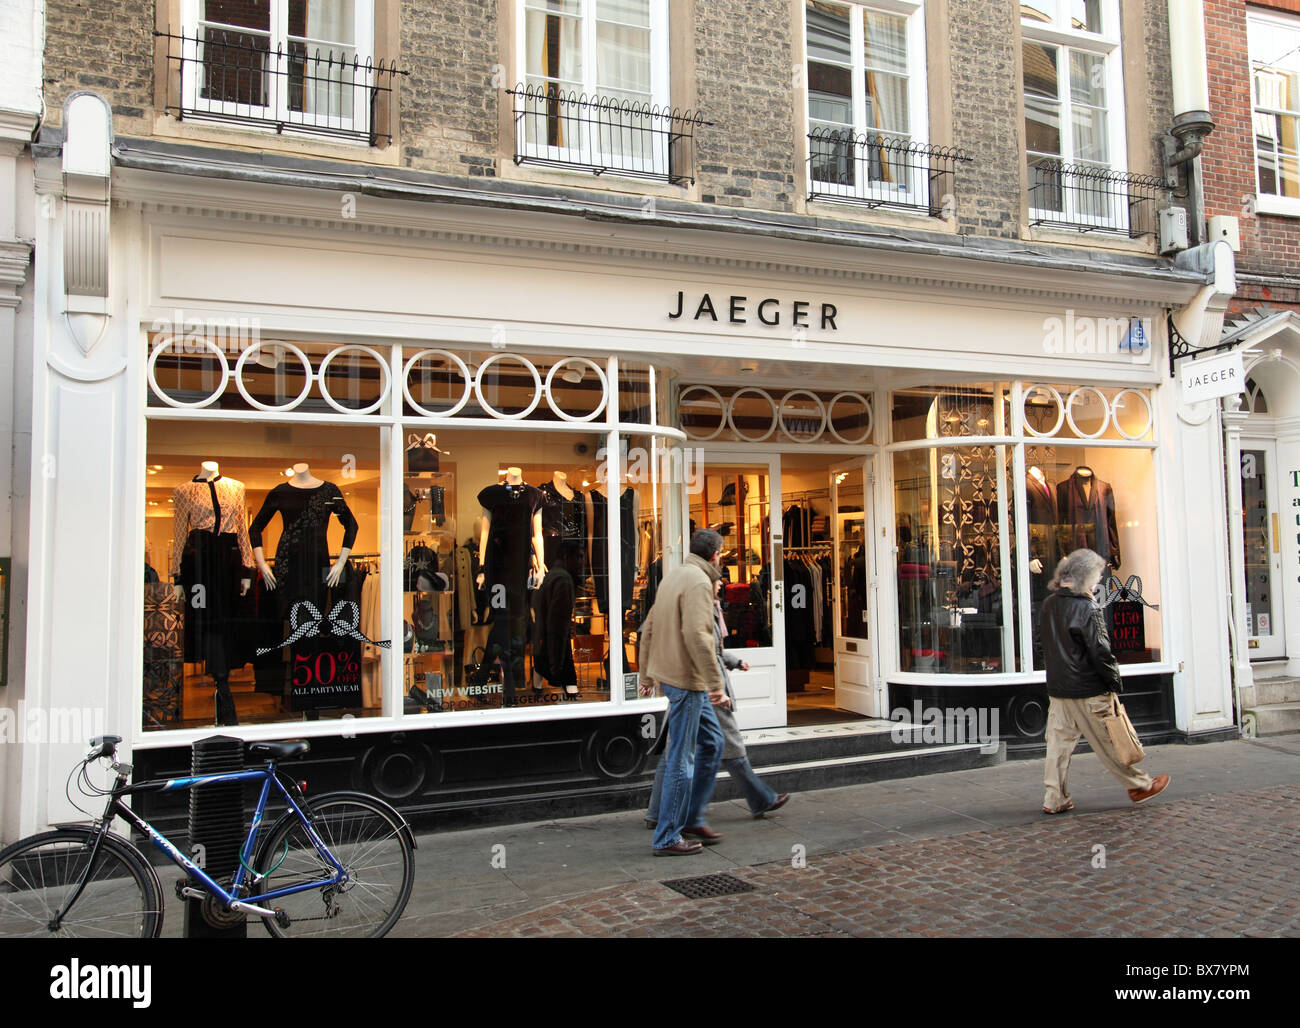 Un magasin Jaeger à Cambridge, Angleterre, Royaume-Uni Banque D'Images